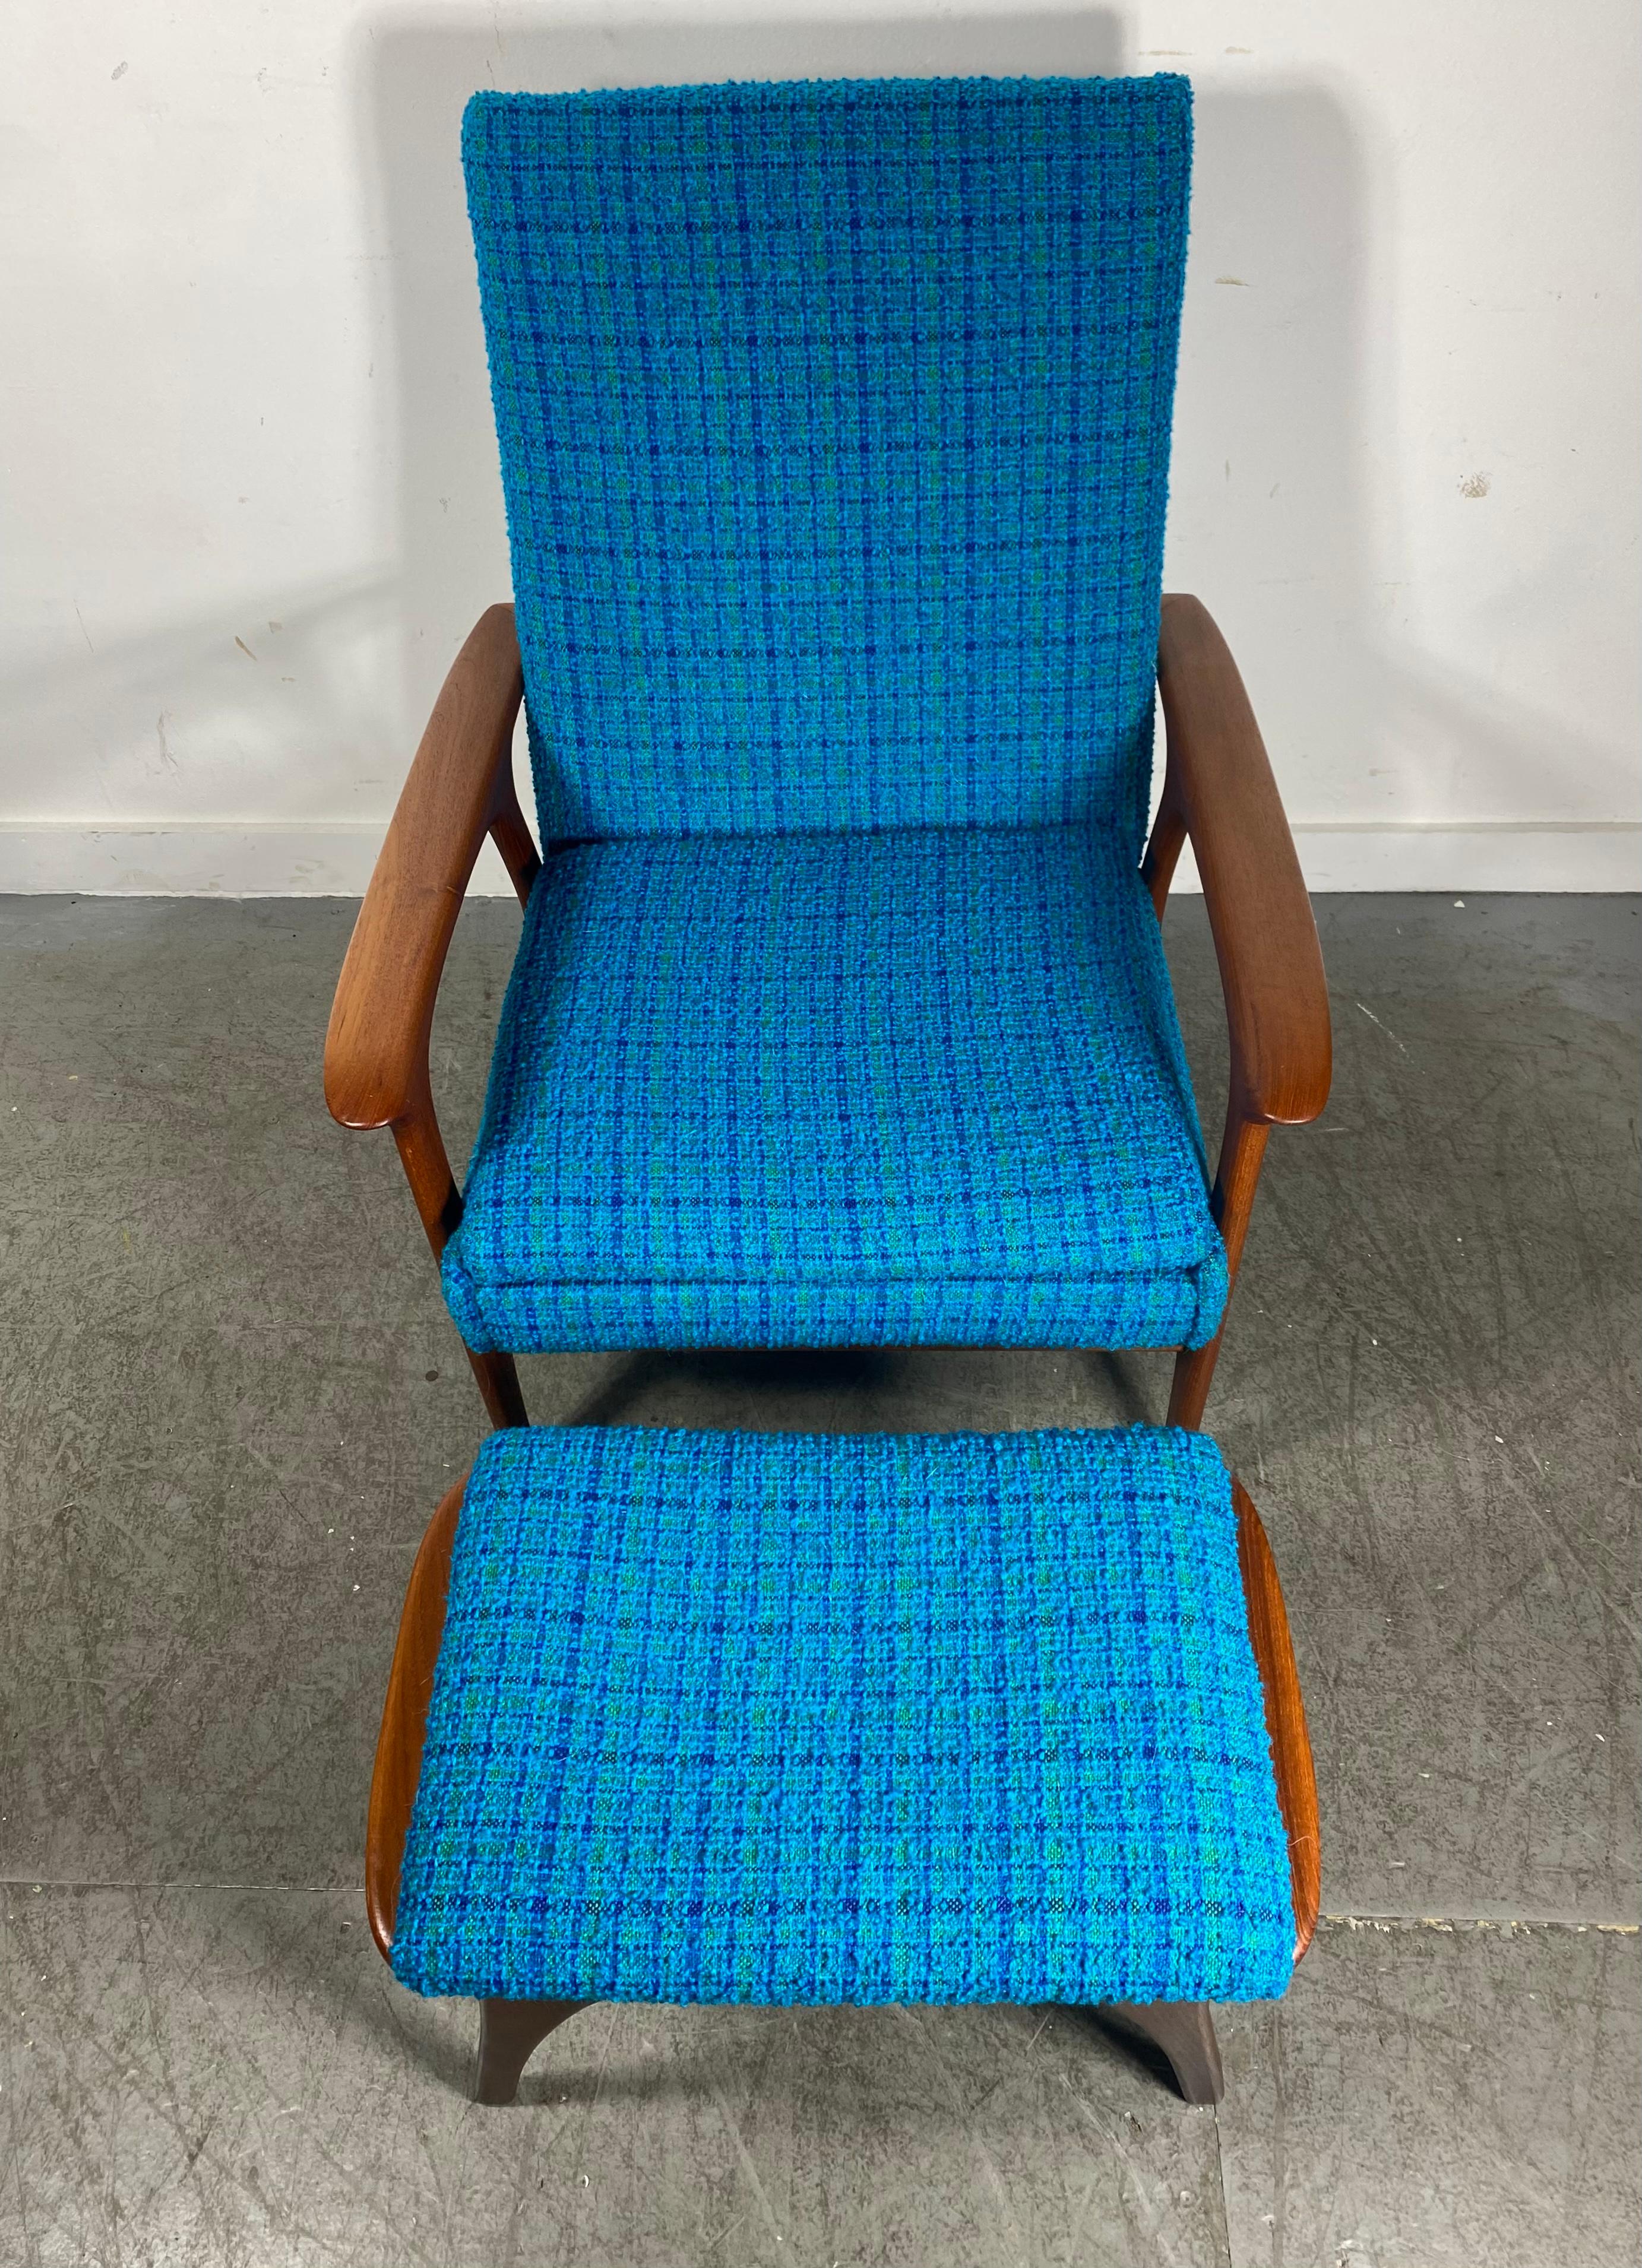 Classic Scandinavian Modern Teak Lounge Chair and Ottoman, after Hans Wegner 2